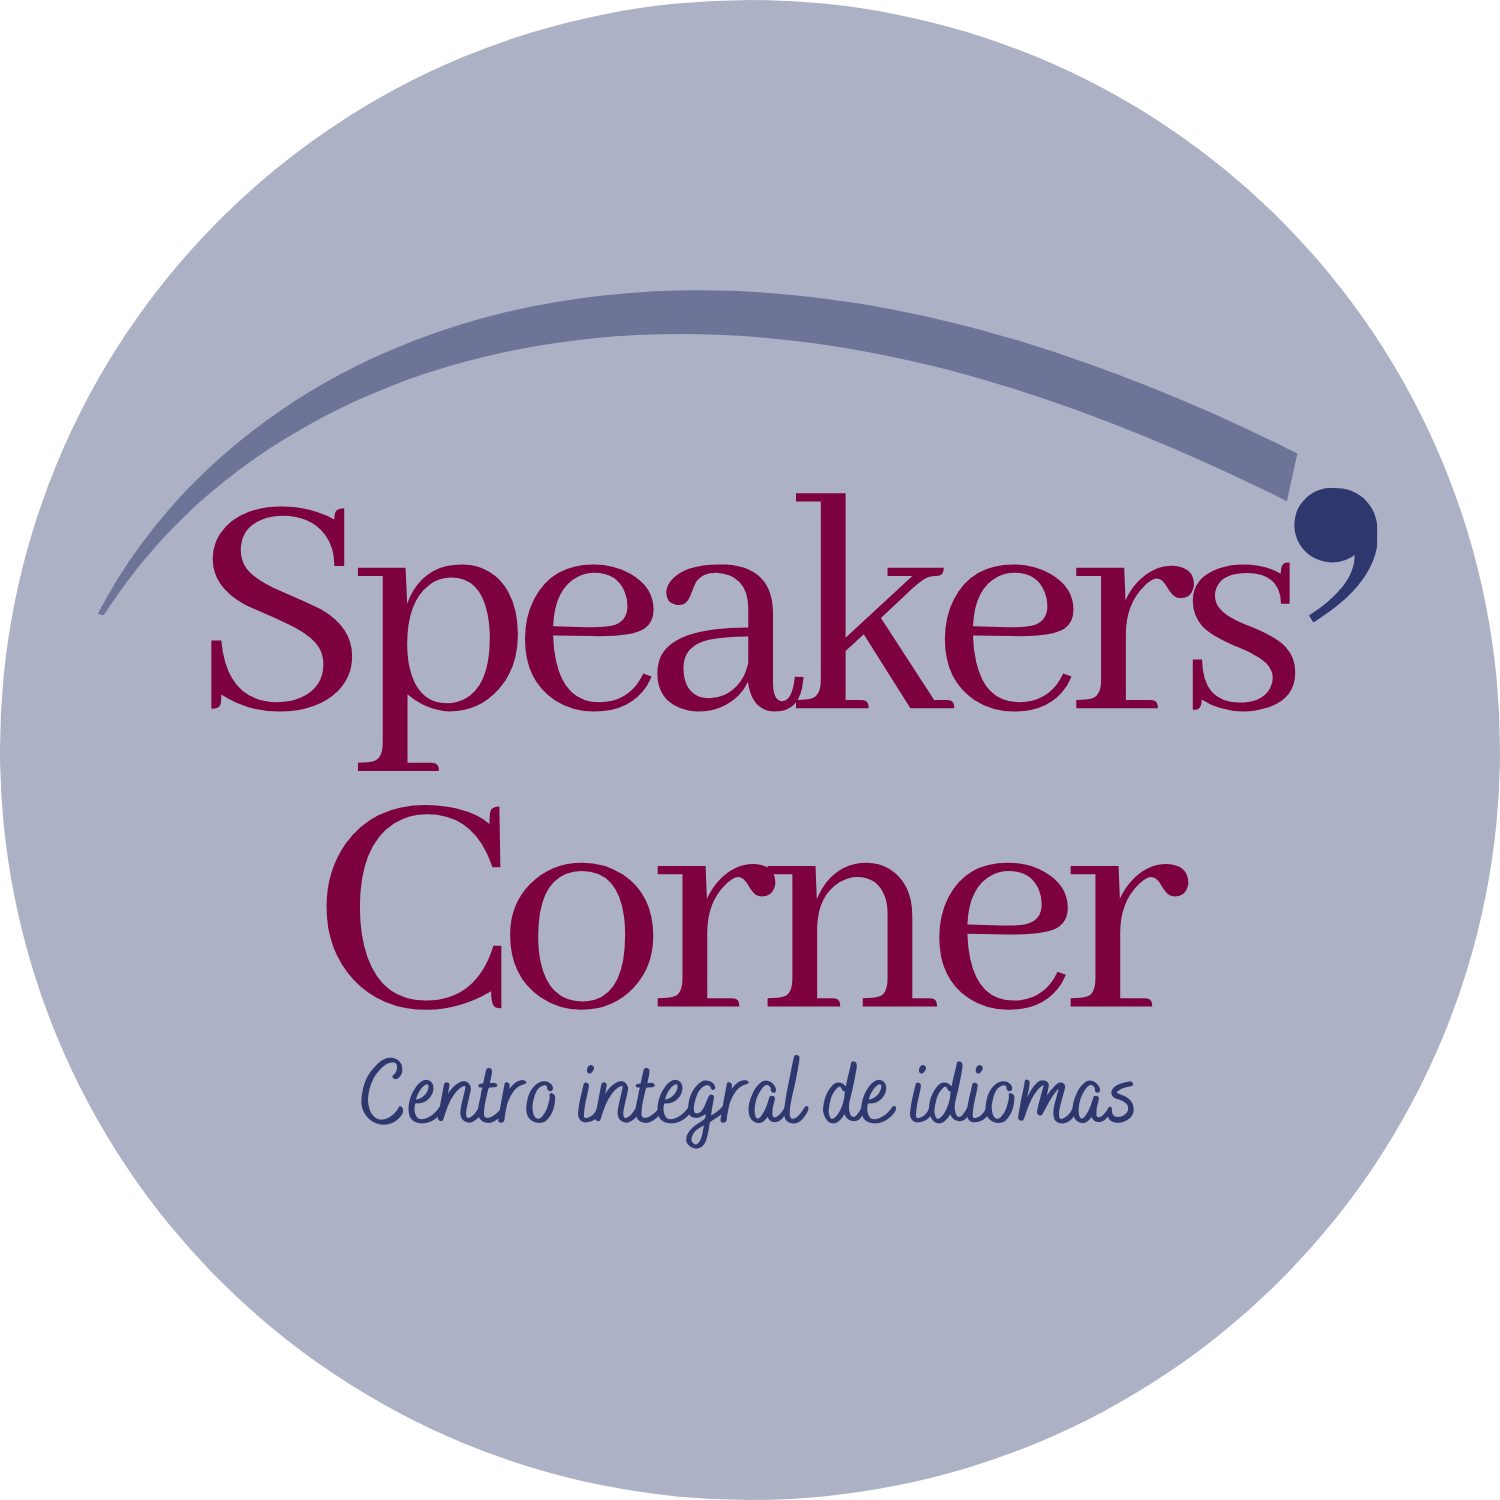 Speakers' Corner